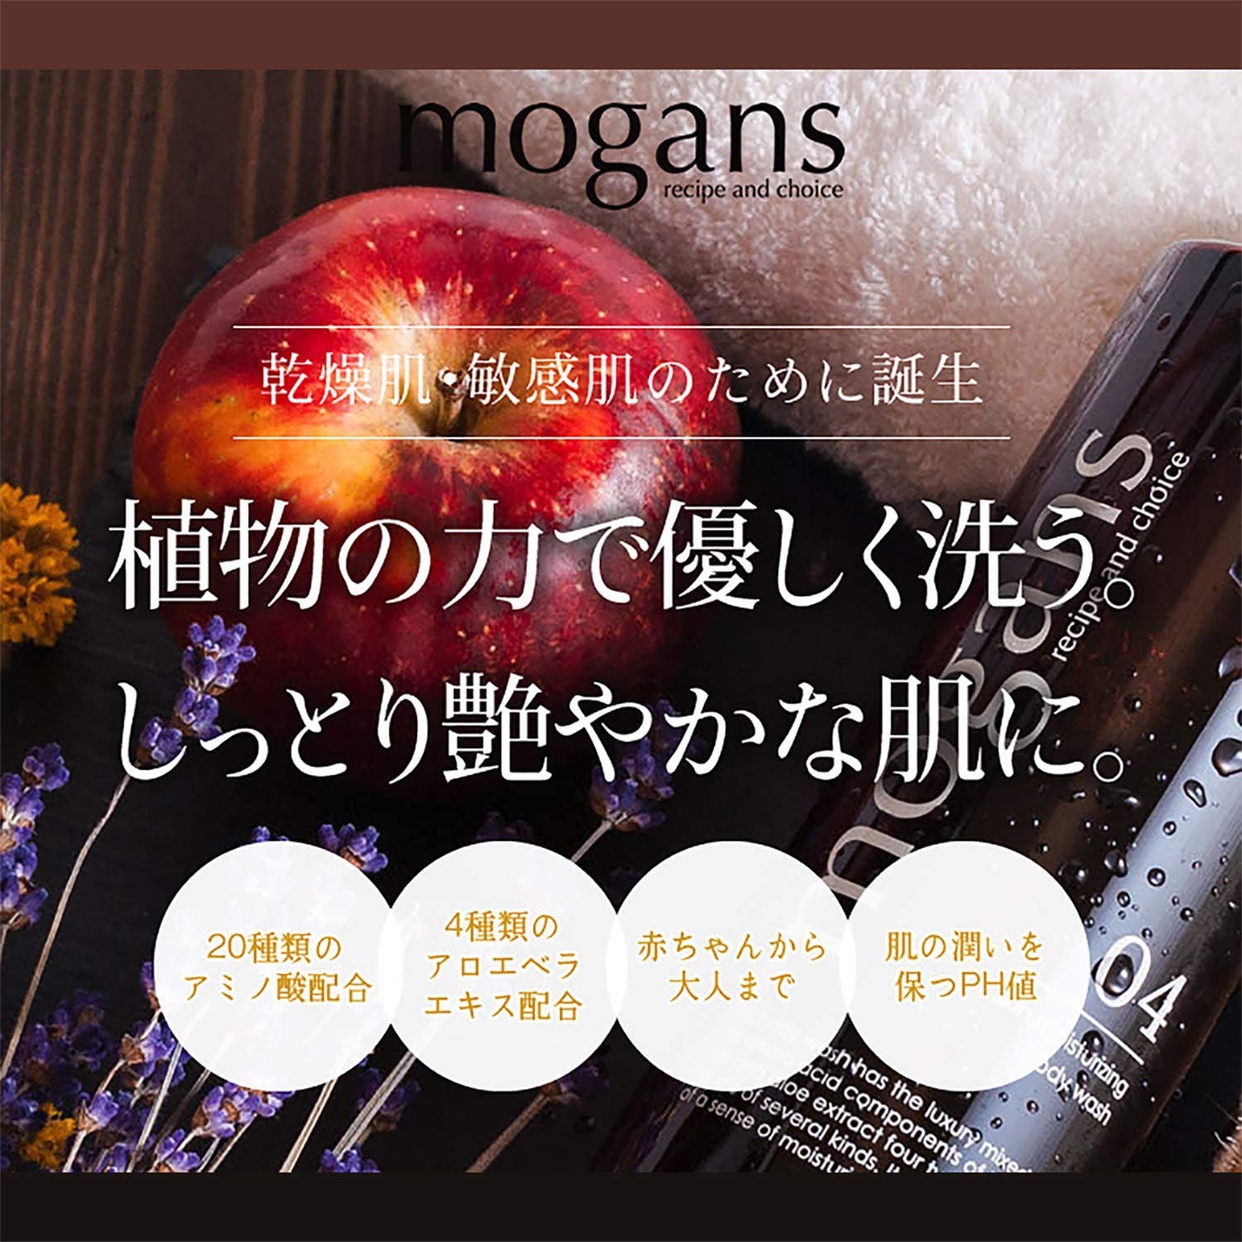 mogans(モーガンズ) ボディウォッシュ オールスキン モイスチャライジングの商品画像サムネ2 